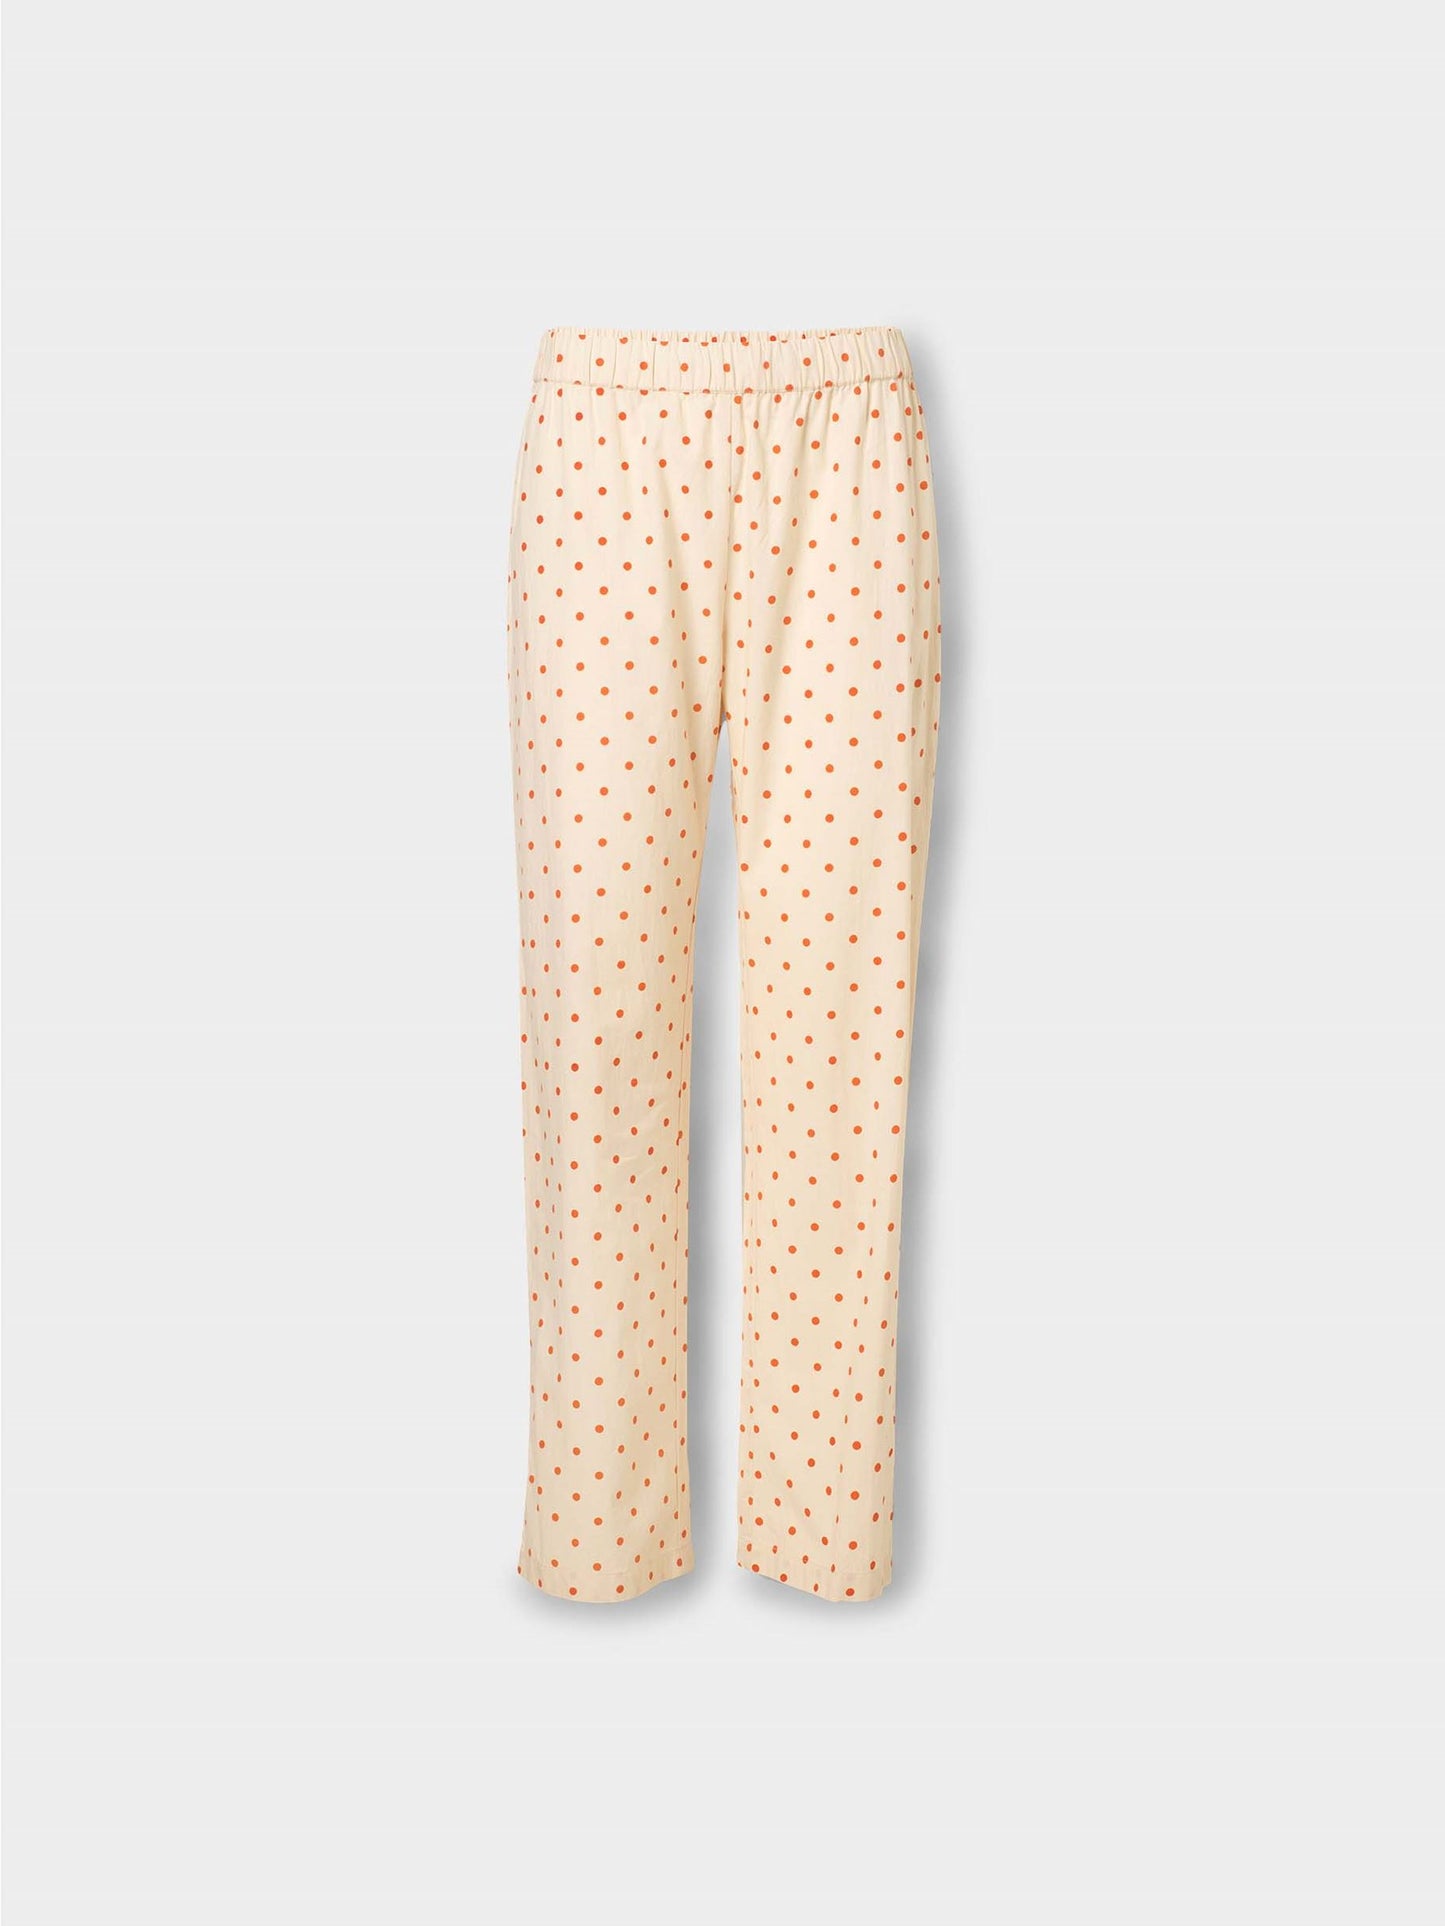 Dot Pyjamas Pants Clothing BeckSöndergaard